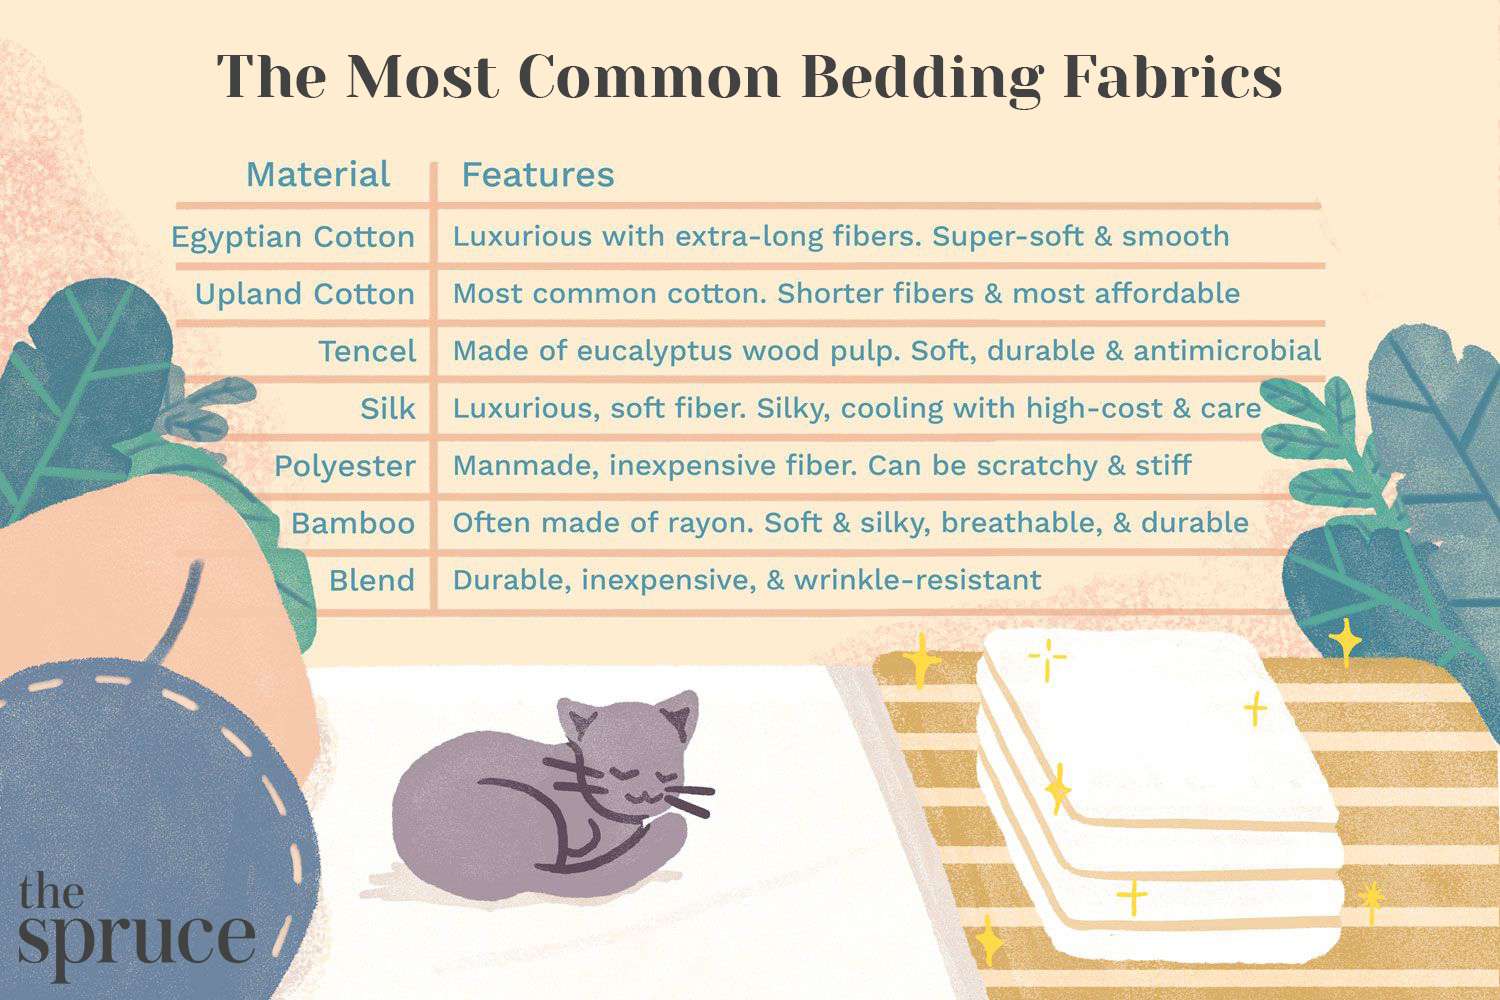 Os tecidos mais comuns para roupas de cama